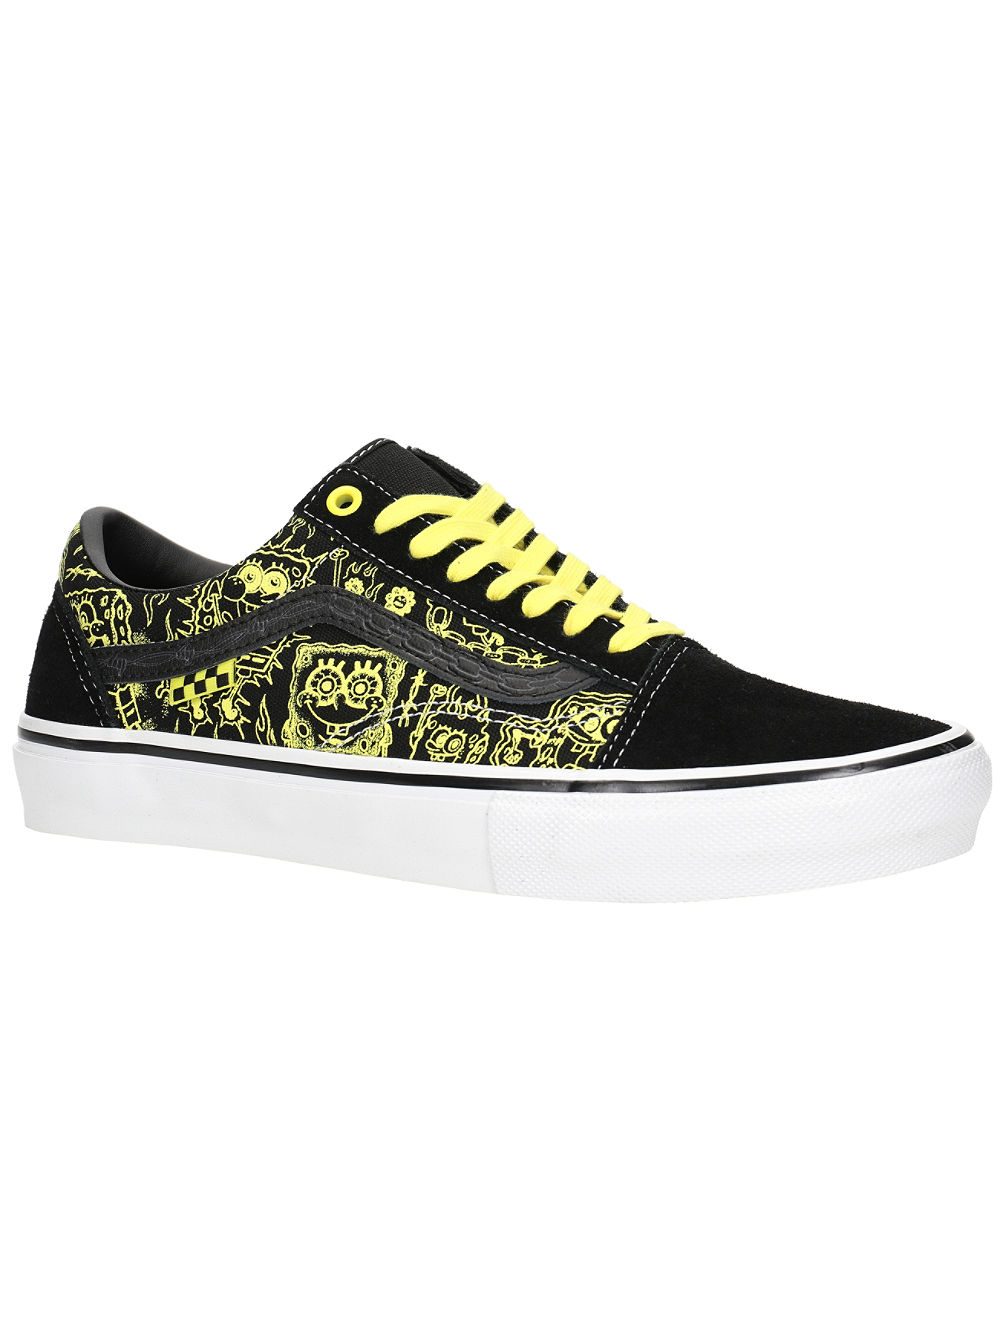 X Spongebob Skate Old Skool Skate Shoes